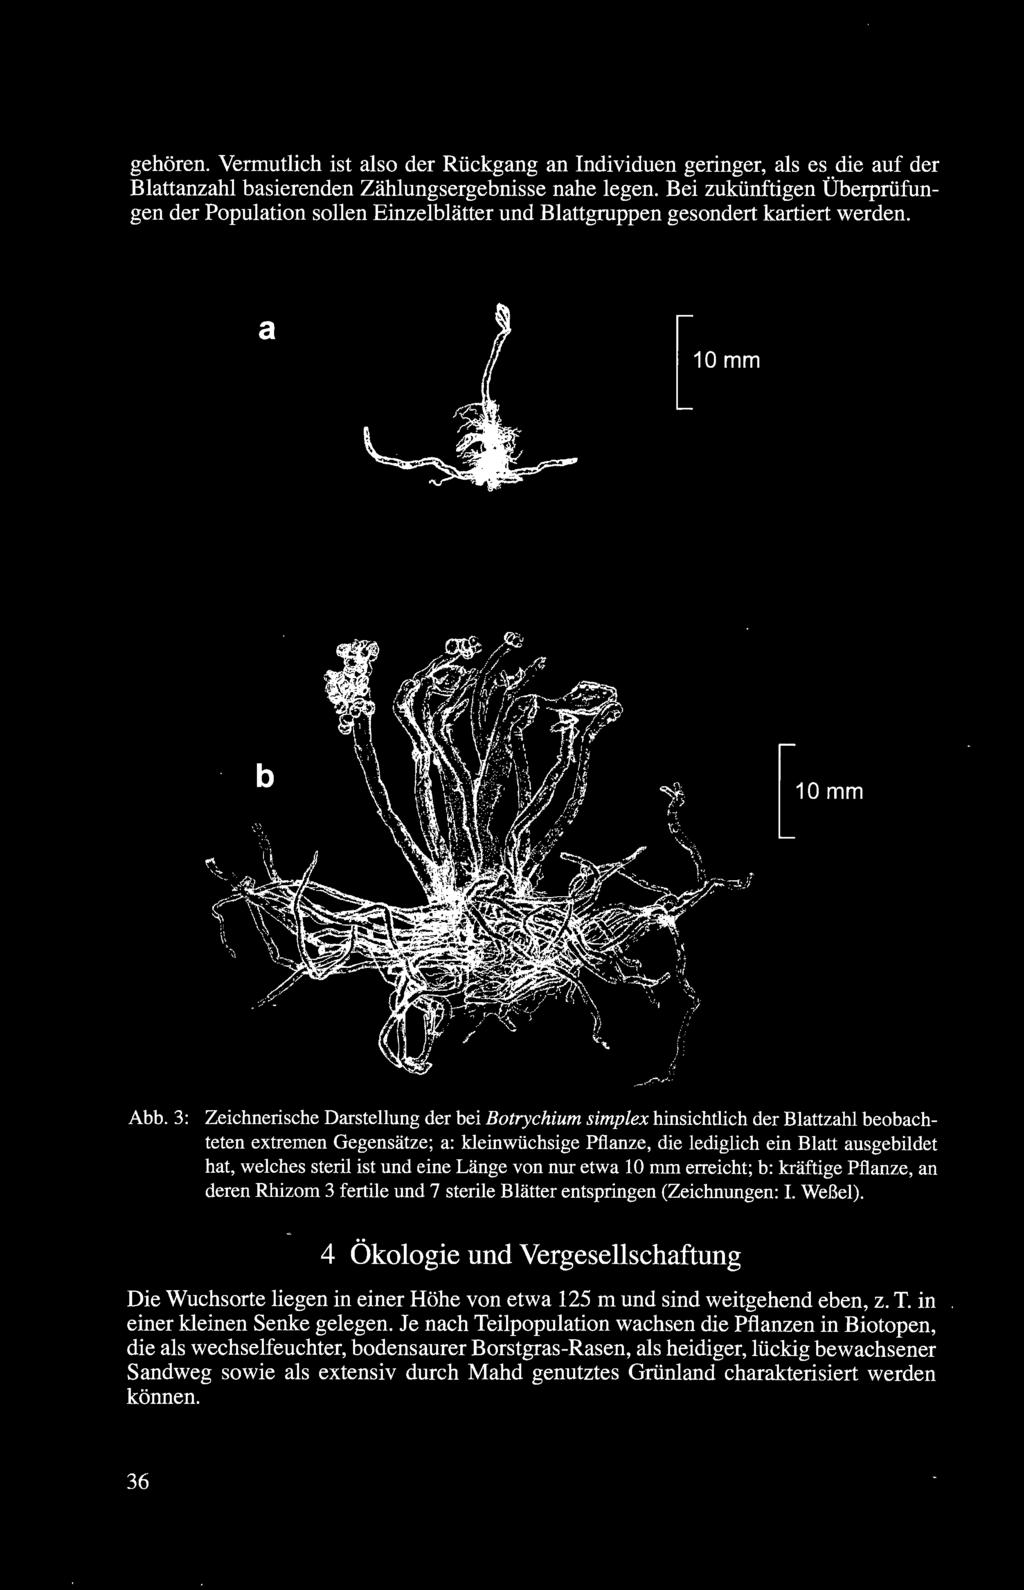 3: Zeichnerische Darstellung der bei Botrychium simplex hinsichtlich der Blattzahl beobachteten extremen Gegensätze; a: kleinwüchsige Pflanze, die lediglich ein Blatt ausgebildet hat, welches steril